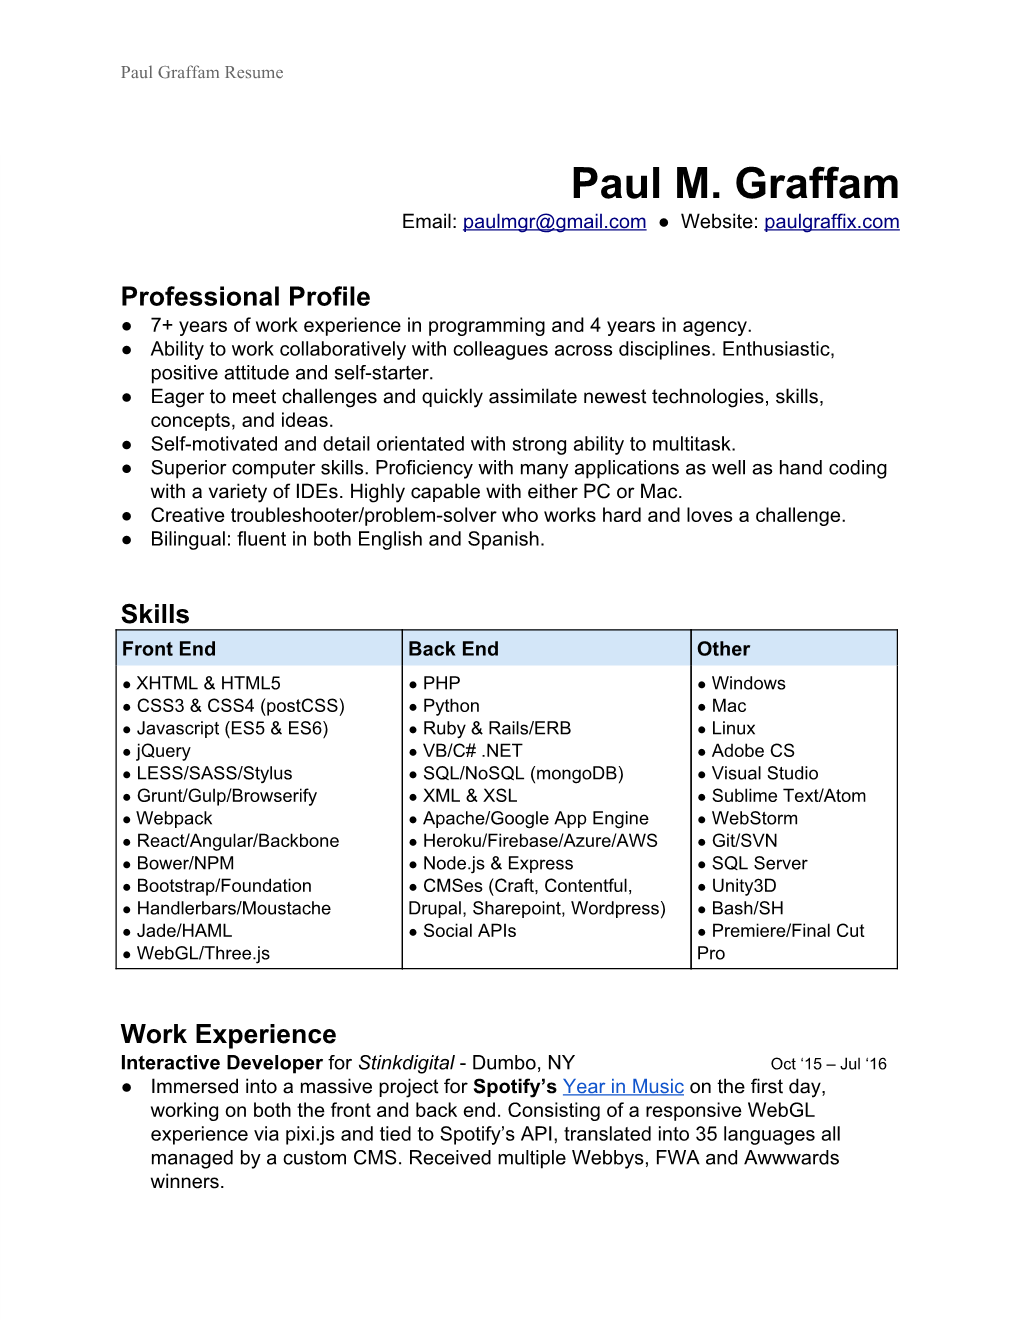 Paul M. Graffam Email: Paulmgr@Gmail.Com ● Website: Paulgraffix.Com ​ ​ ​ ​ ​ ​ ​